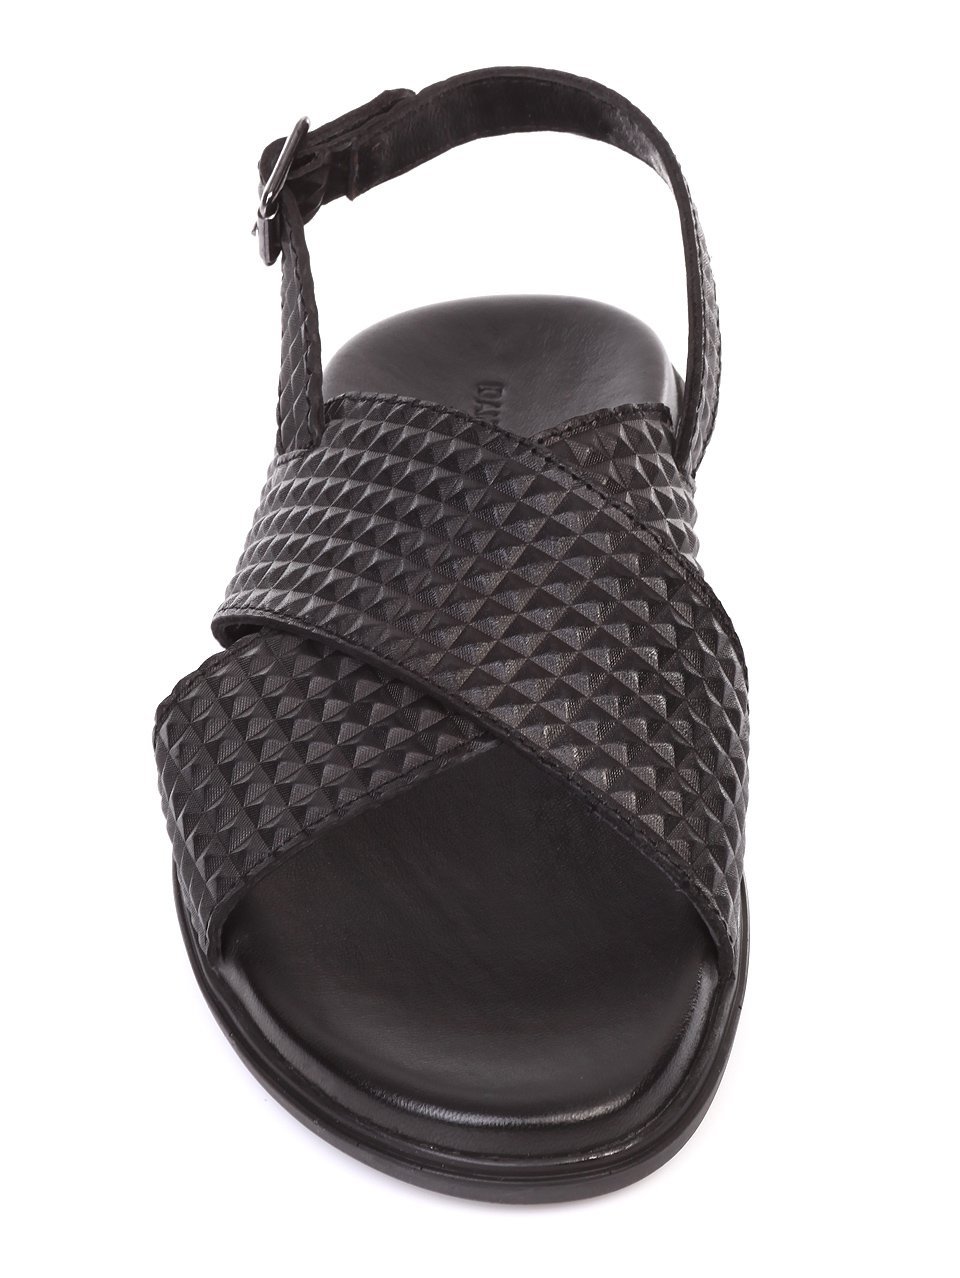 Ежедневни мъжки сандали от естествена кожа 8AT-18608 black